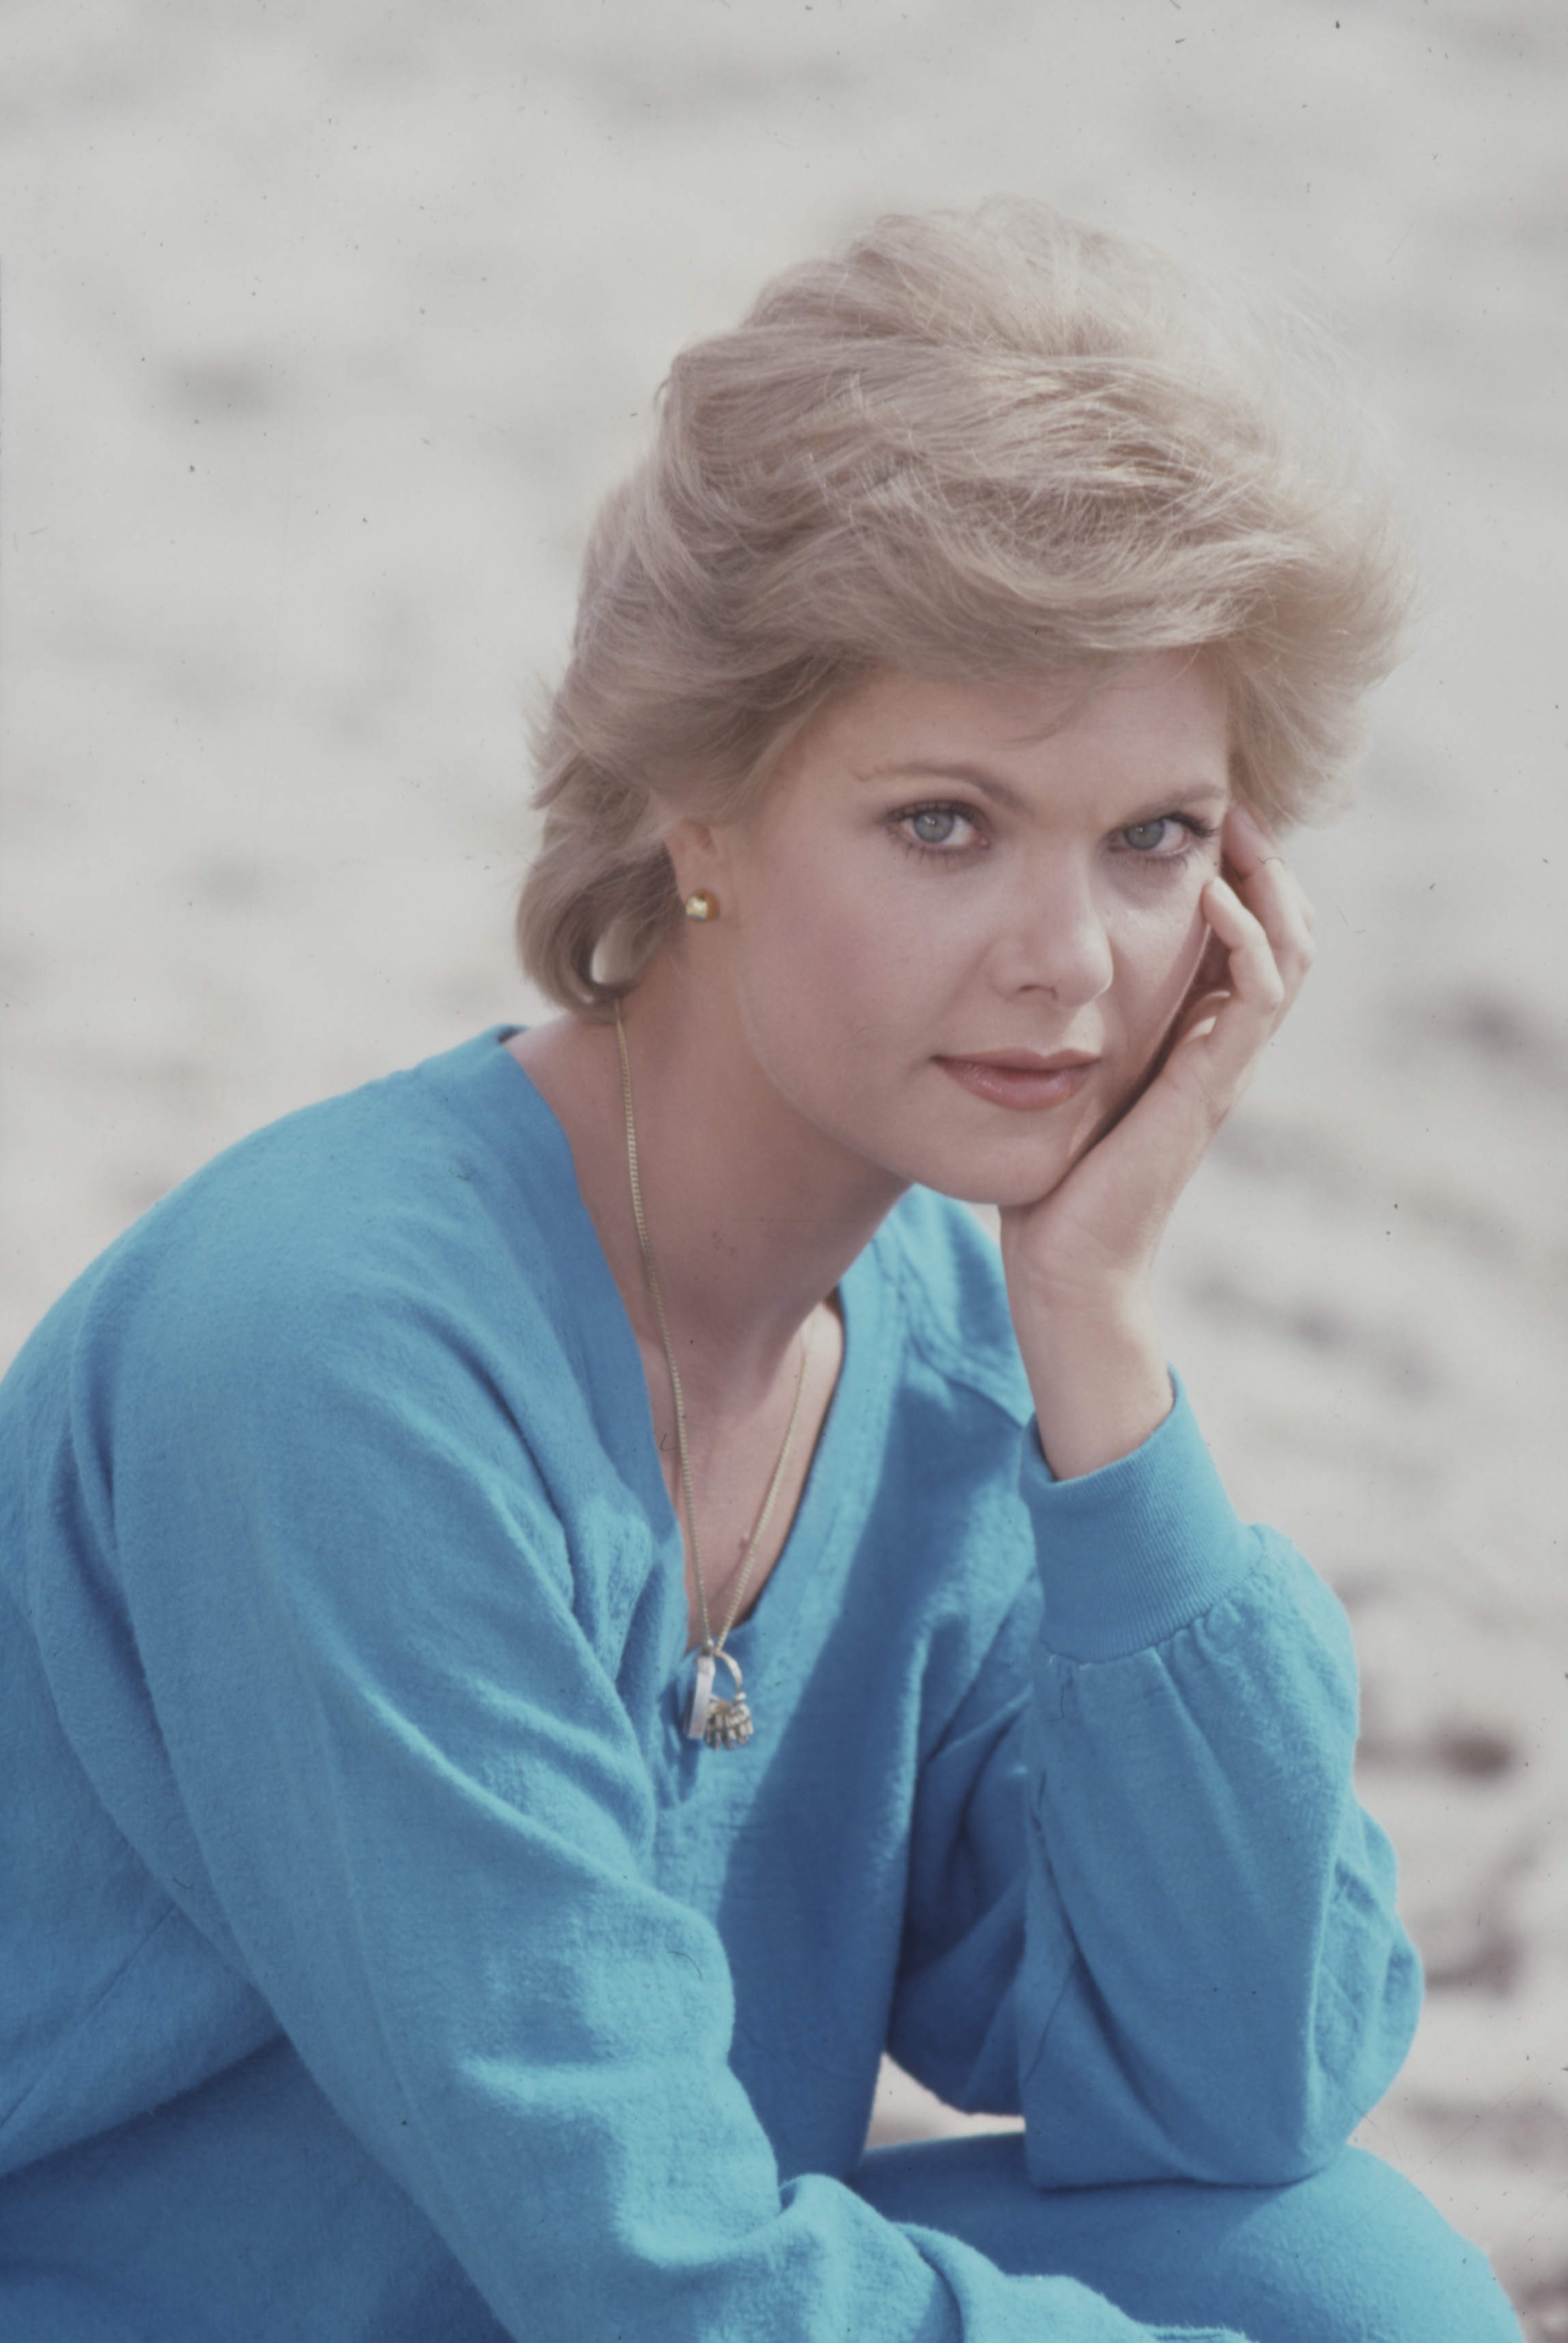 Ann Jillian in "Malibu," 1983. | Source: Getty Images